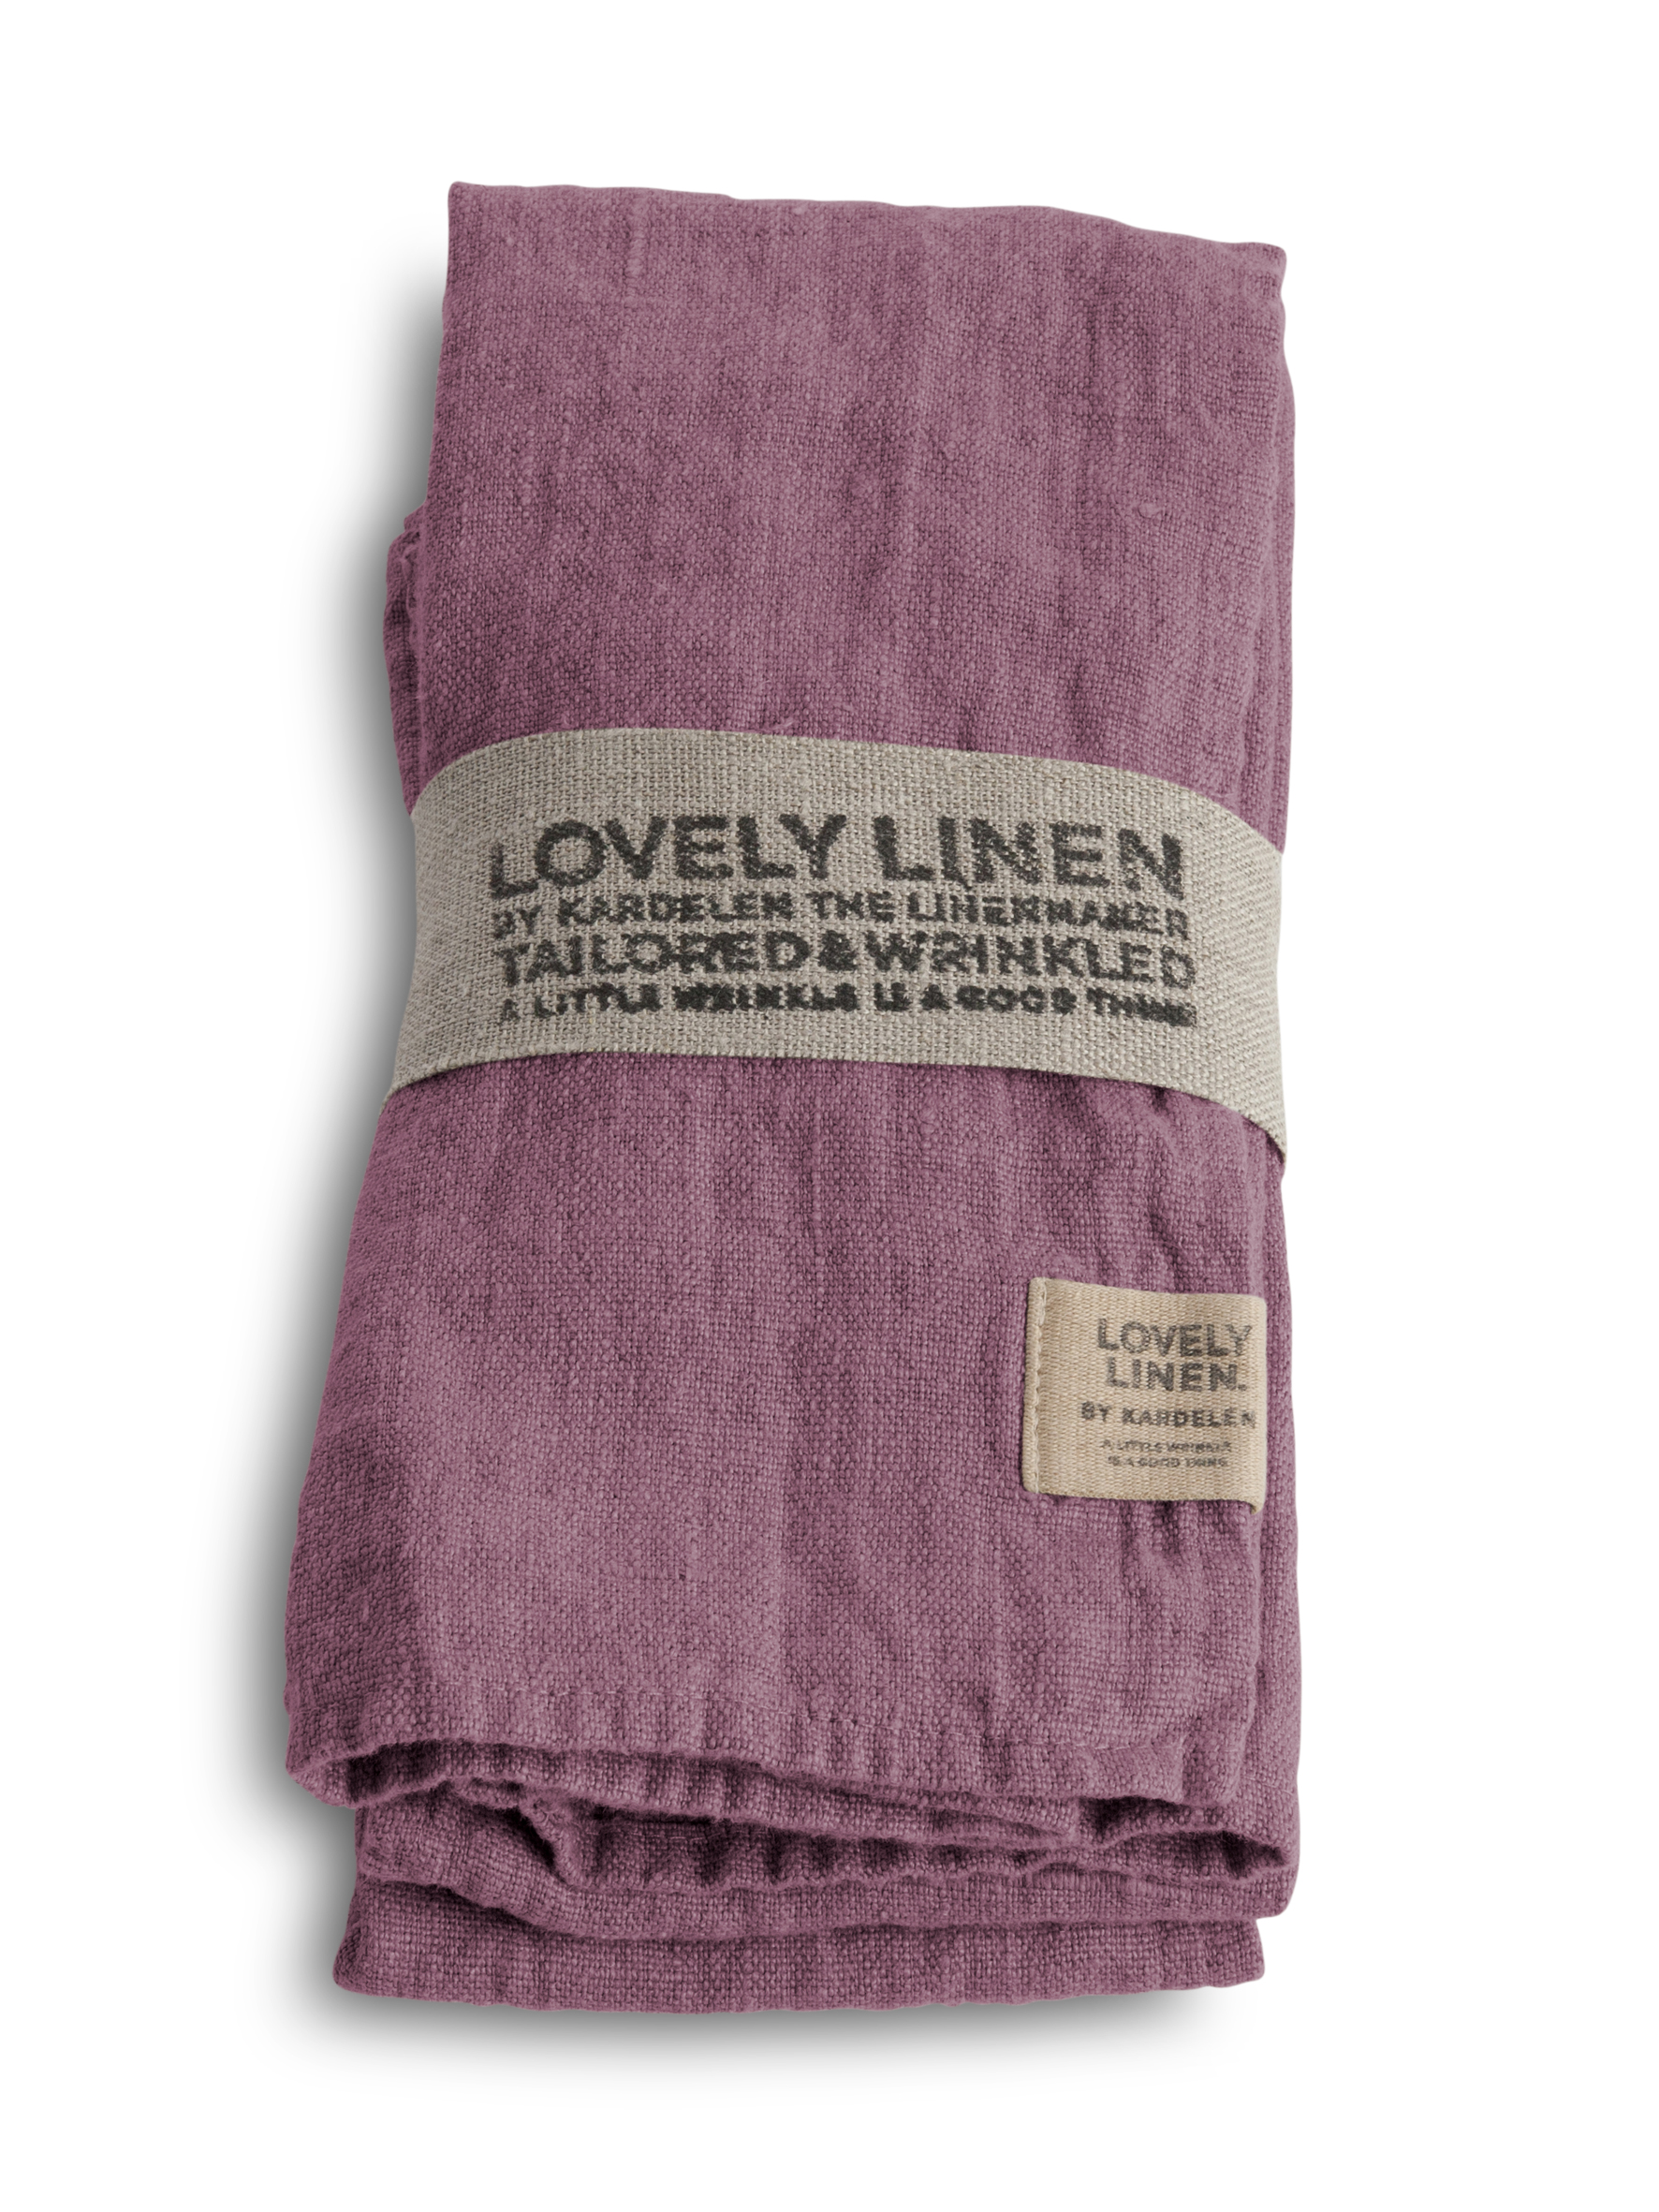 lovely-linen-100-european-linen-table-napkin-in-old-rose